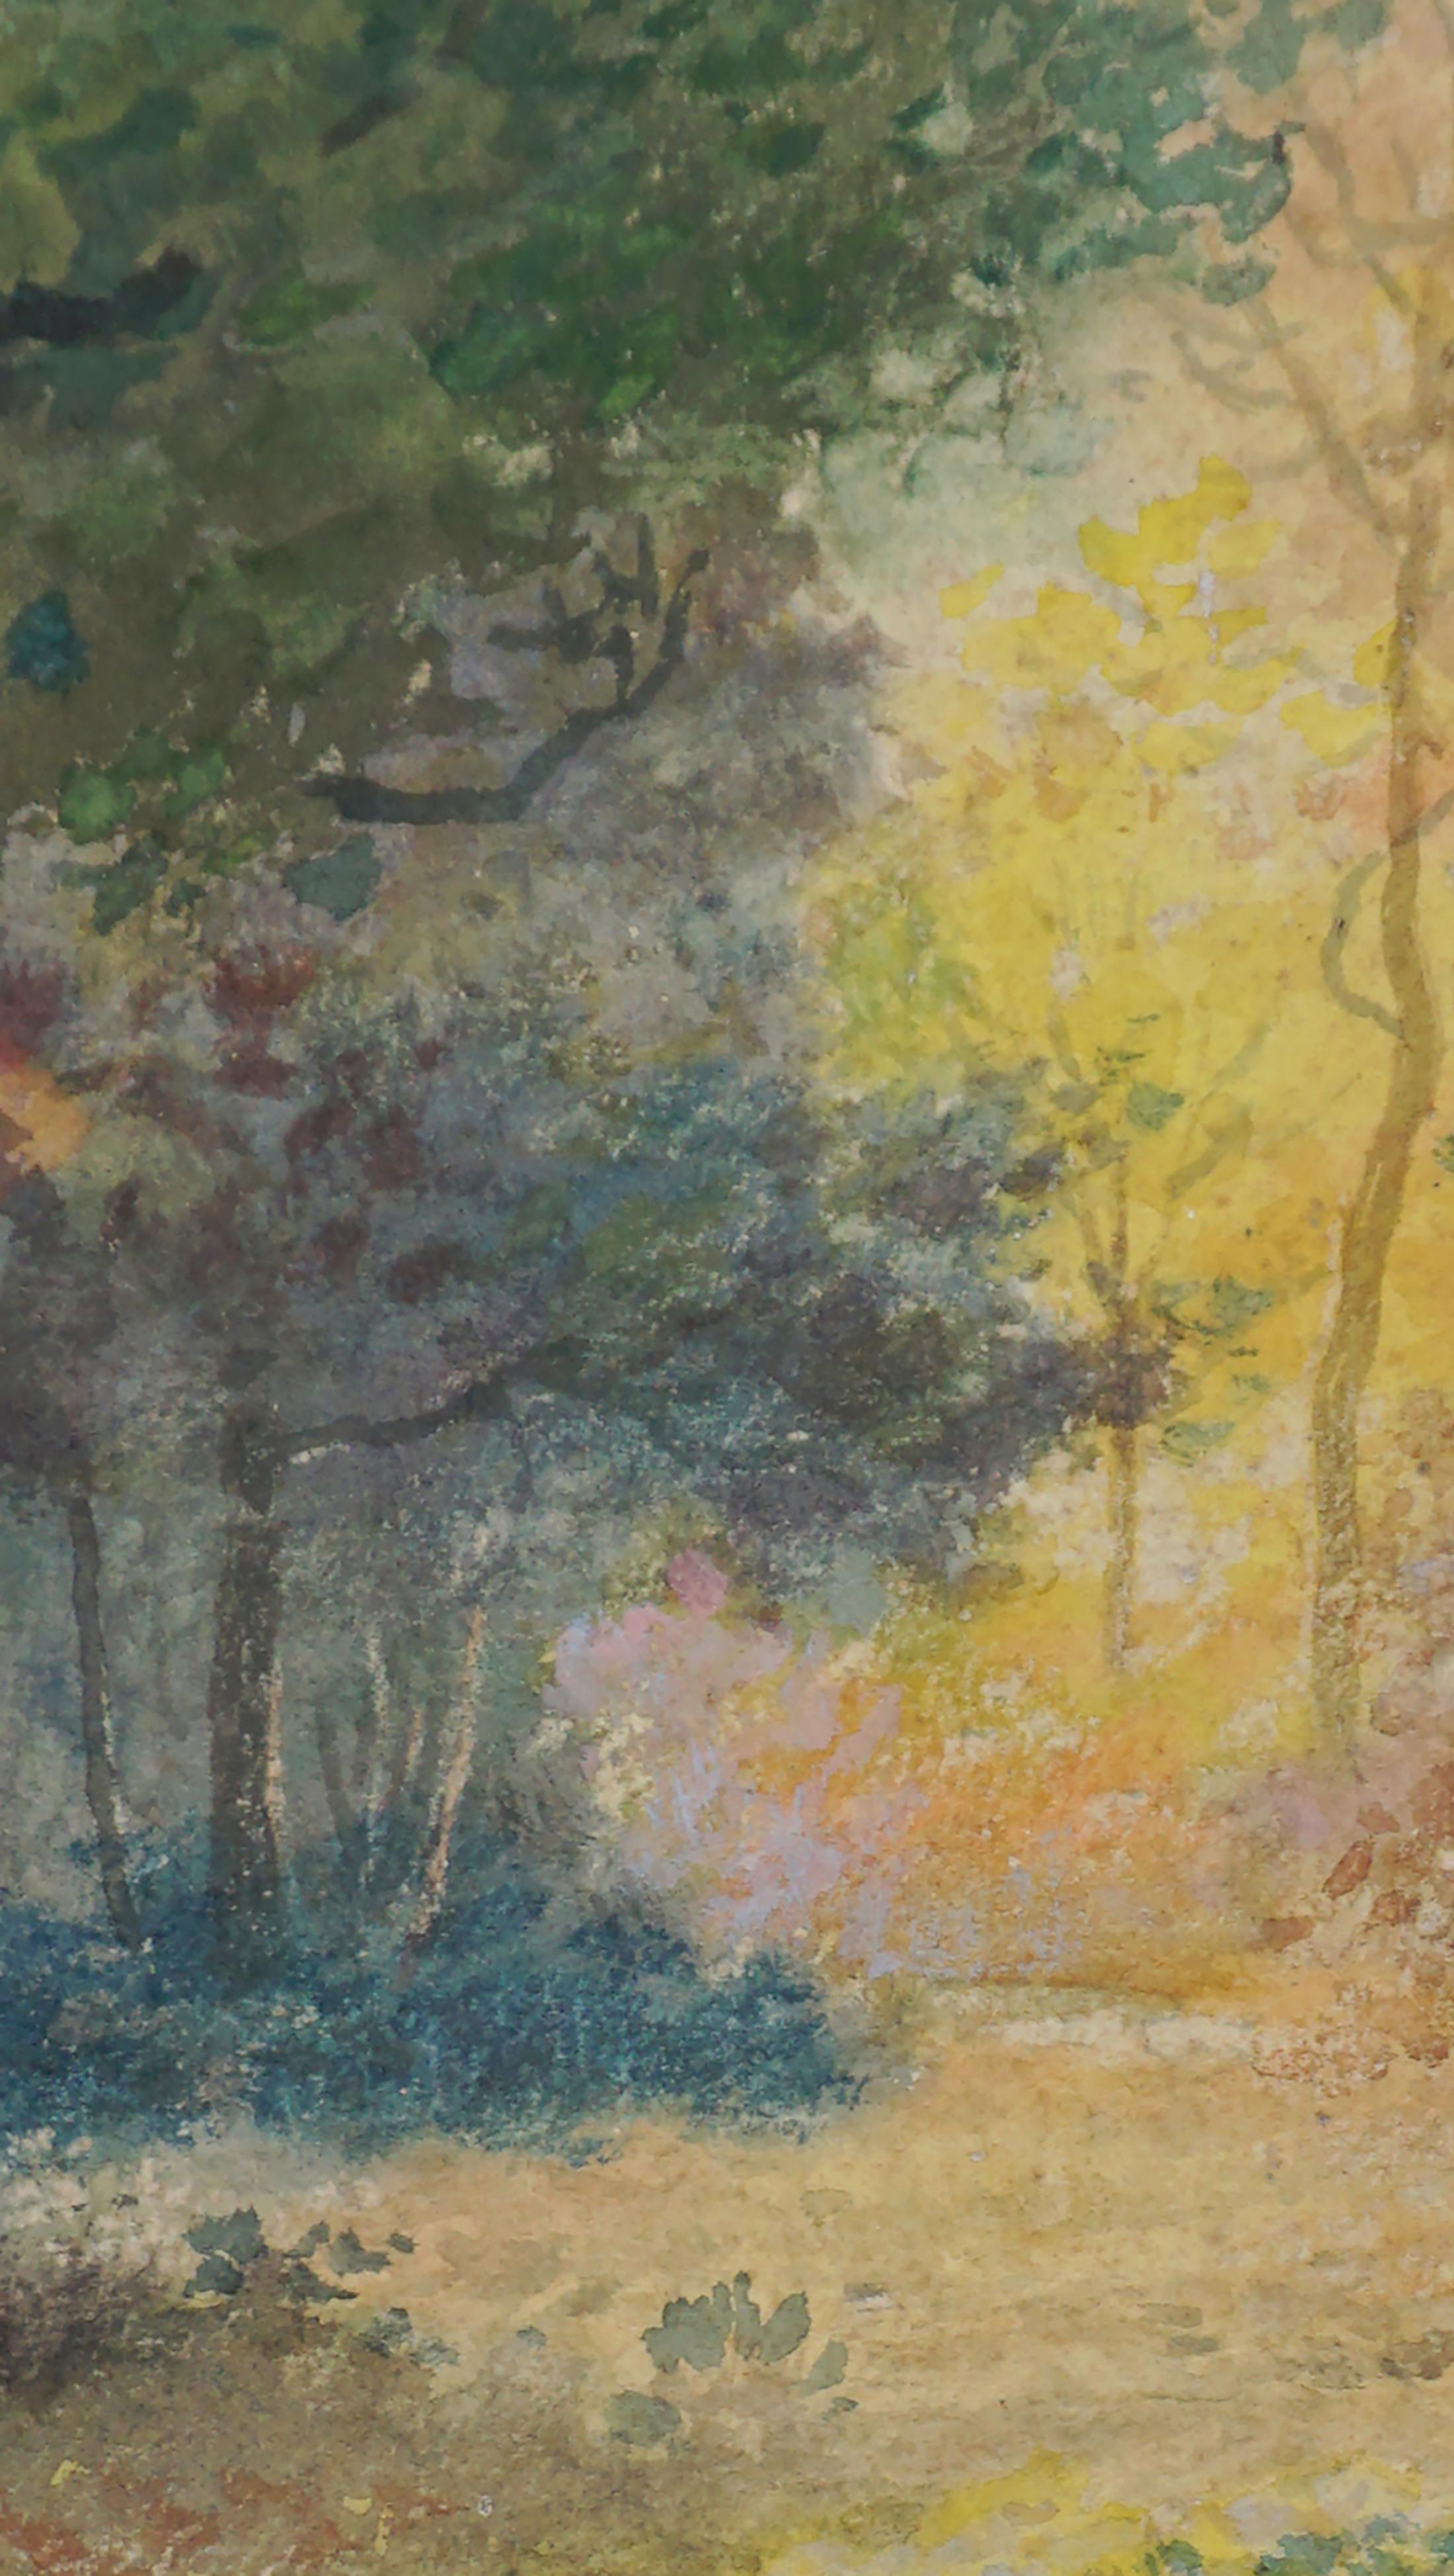 Schöne Hudson River School Original Gouache Herbstlandschaft von Charles Russell Loomis (Amerikaner 1857 - 1936), CIRCA 1880, mit lebhaftem Sonnenuntergang im Wald. Warme und kühle Töne mit leuchtenden Farben bieten eine angenehme und anhaltende